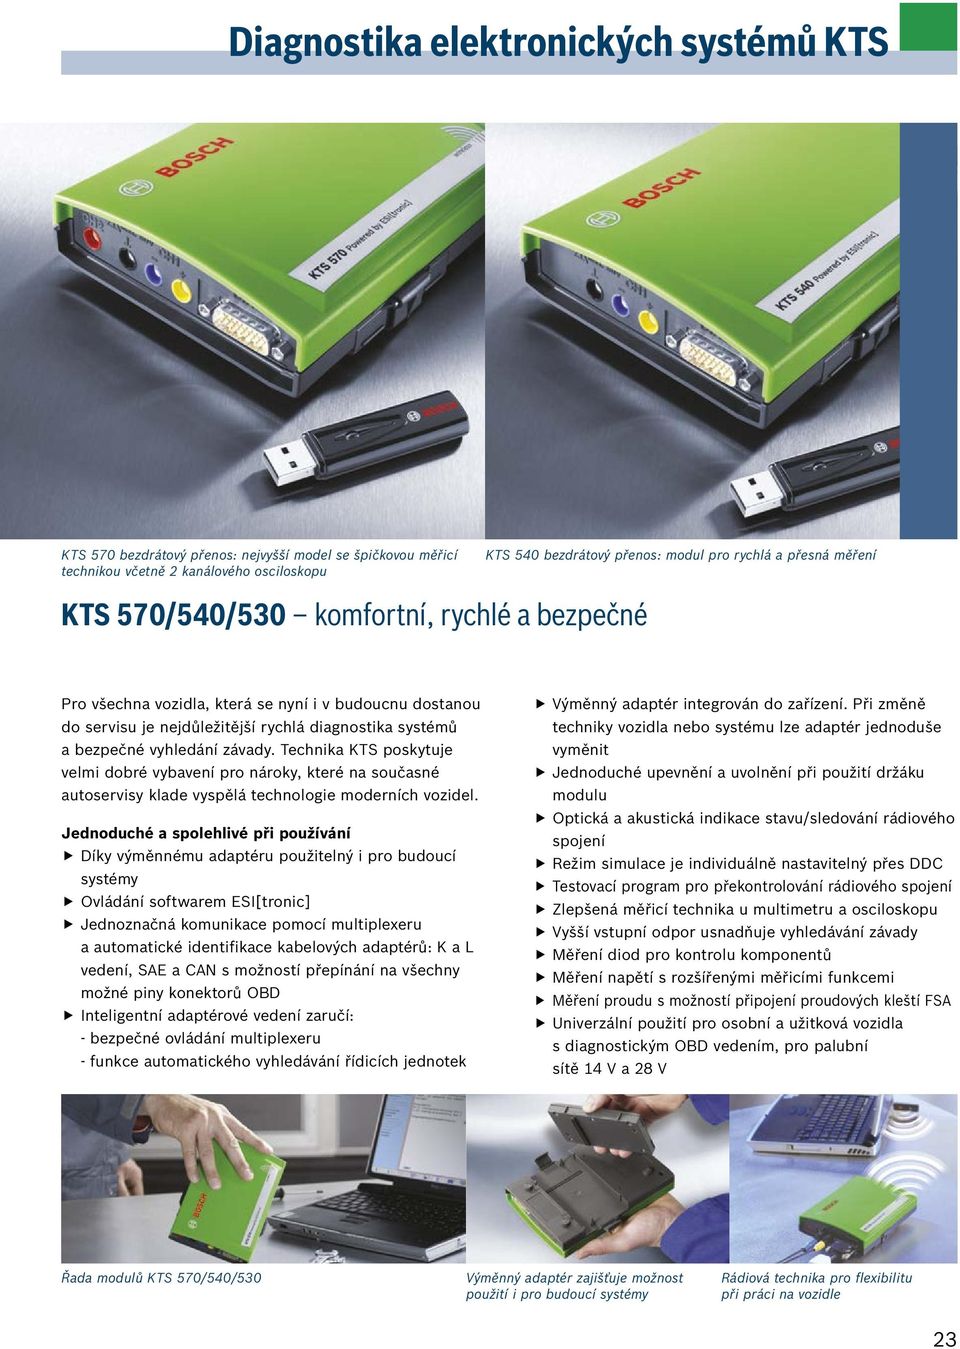 Technika KTS poskytuje velmi dobré vybavení pro nároky, které na současné autoservisy klade vyspělá technologie moderních vozidel.